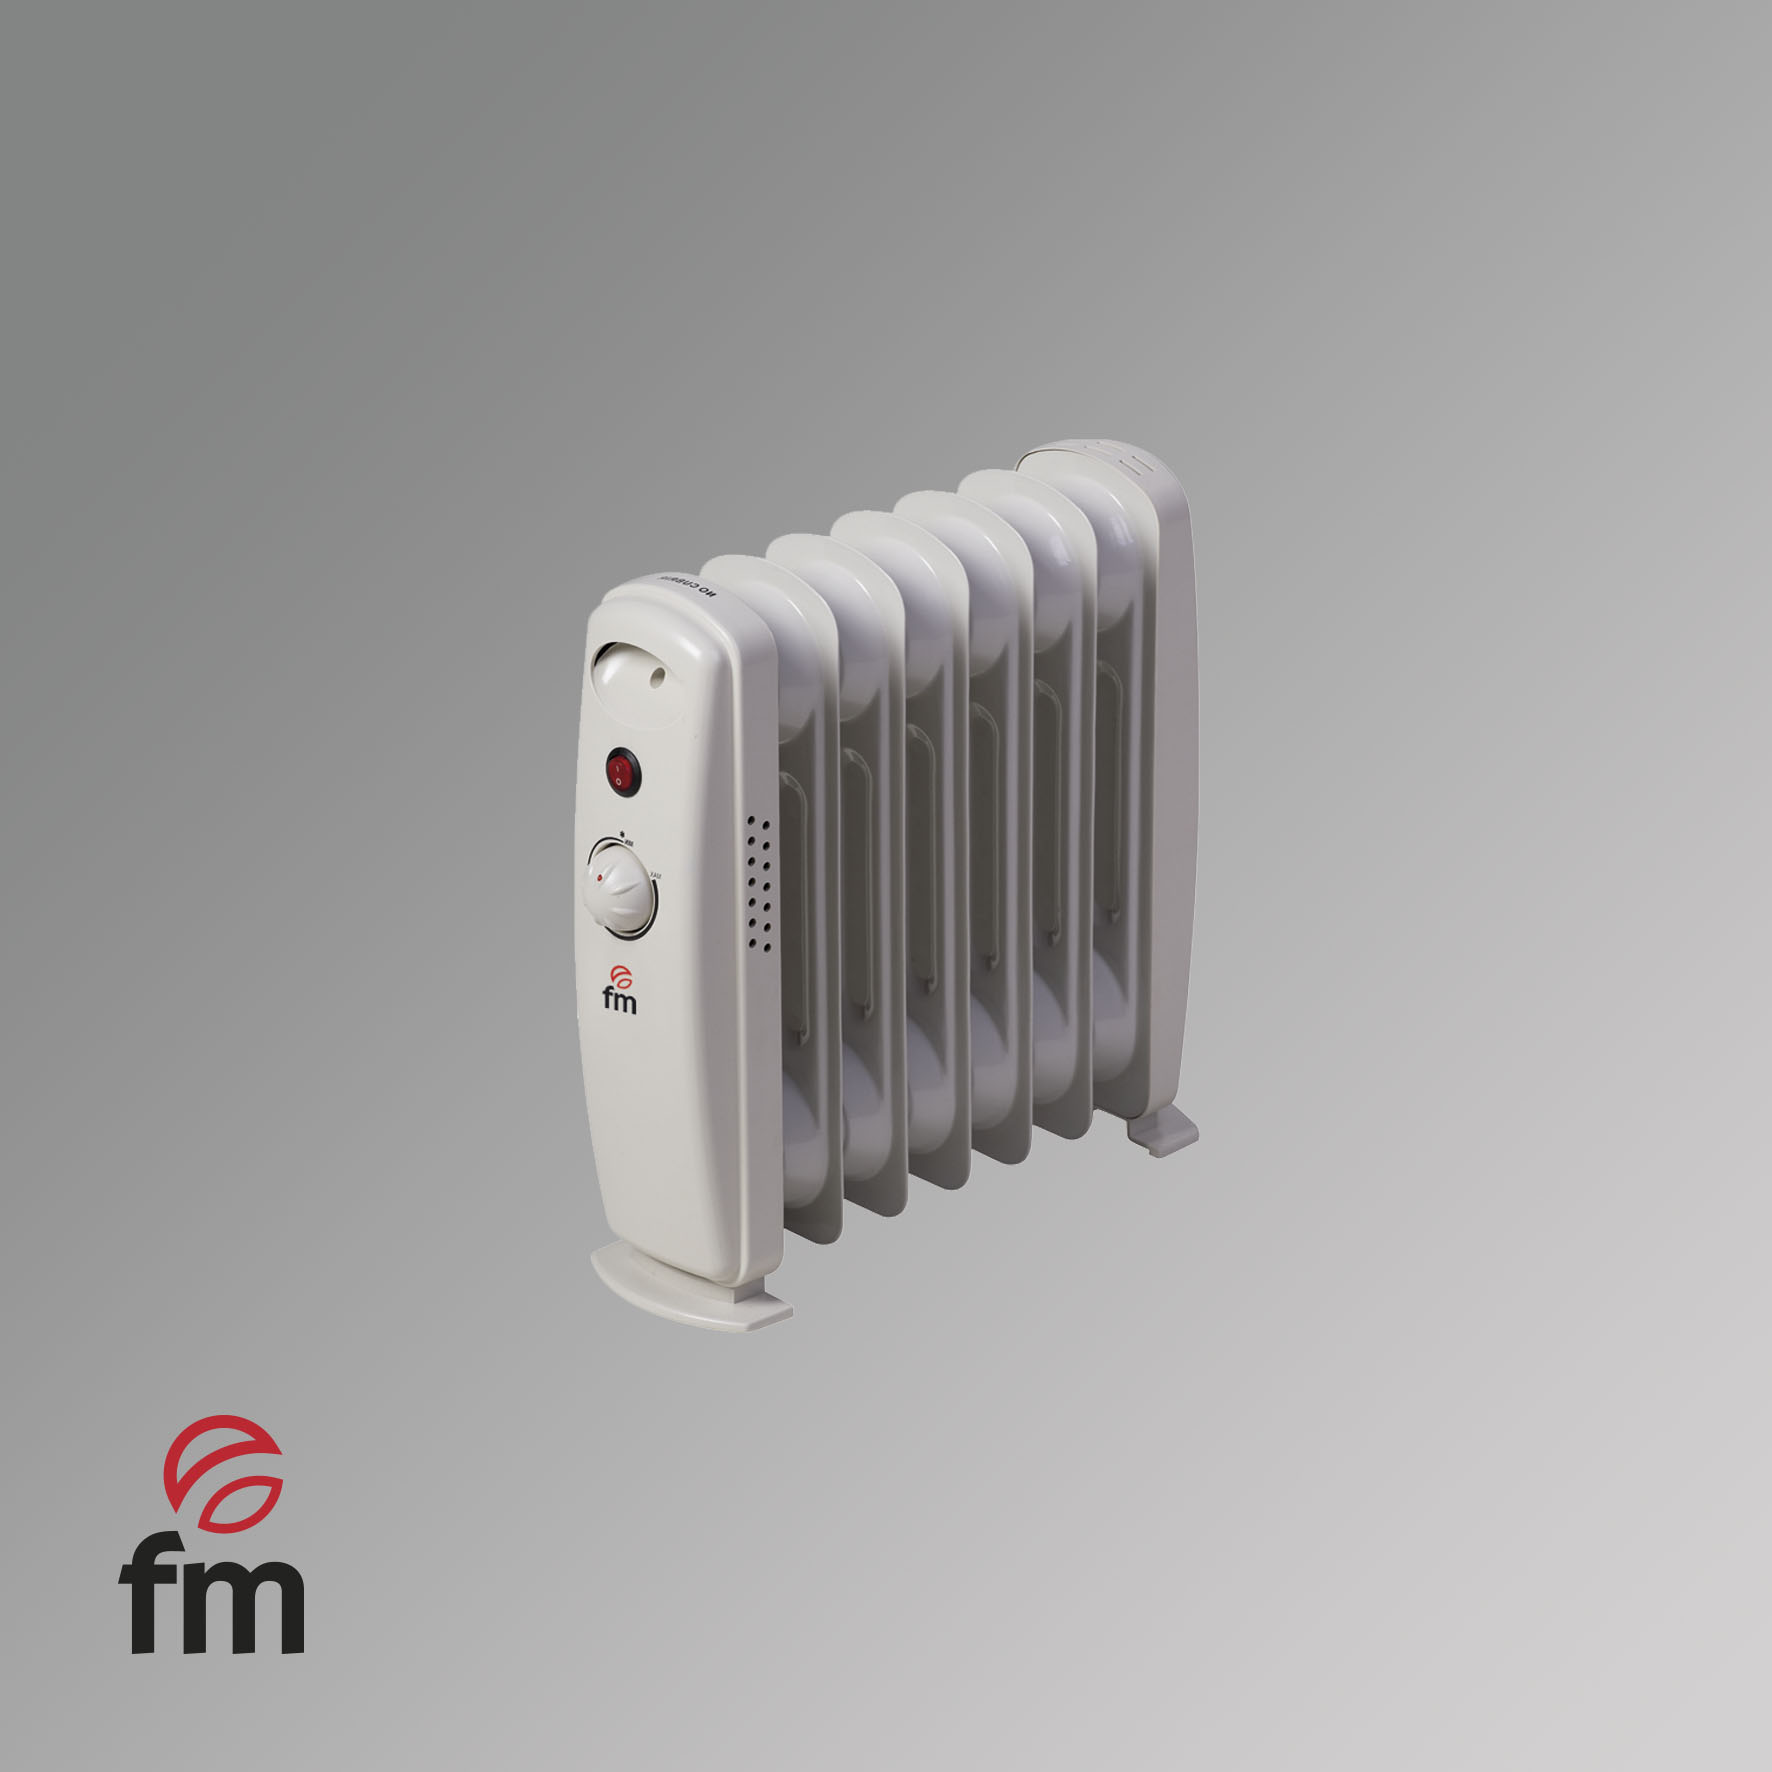 Emisor térmico de placa cerámica 900W de bajo consumo y control WIFI